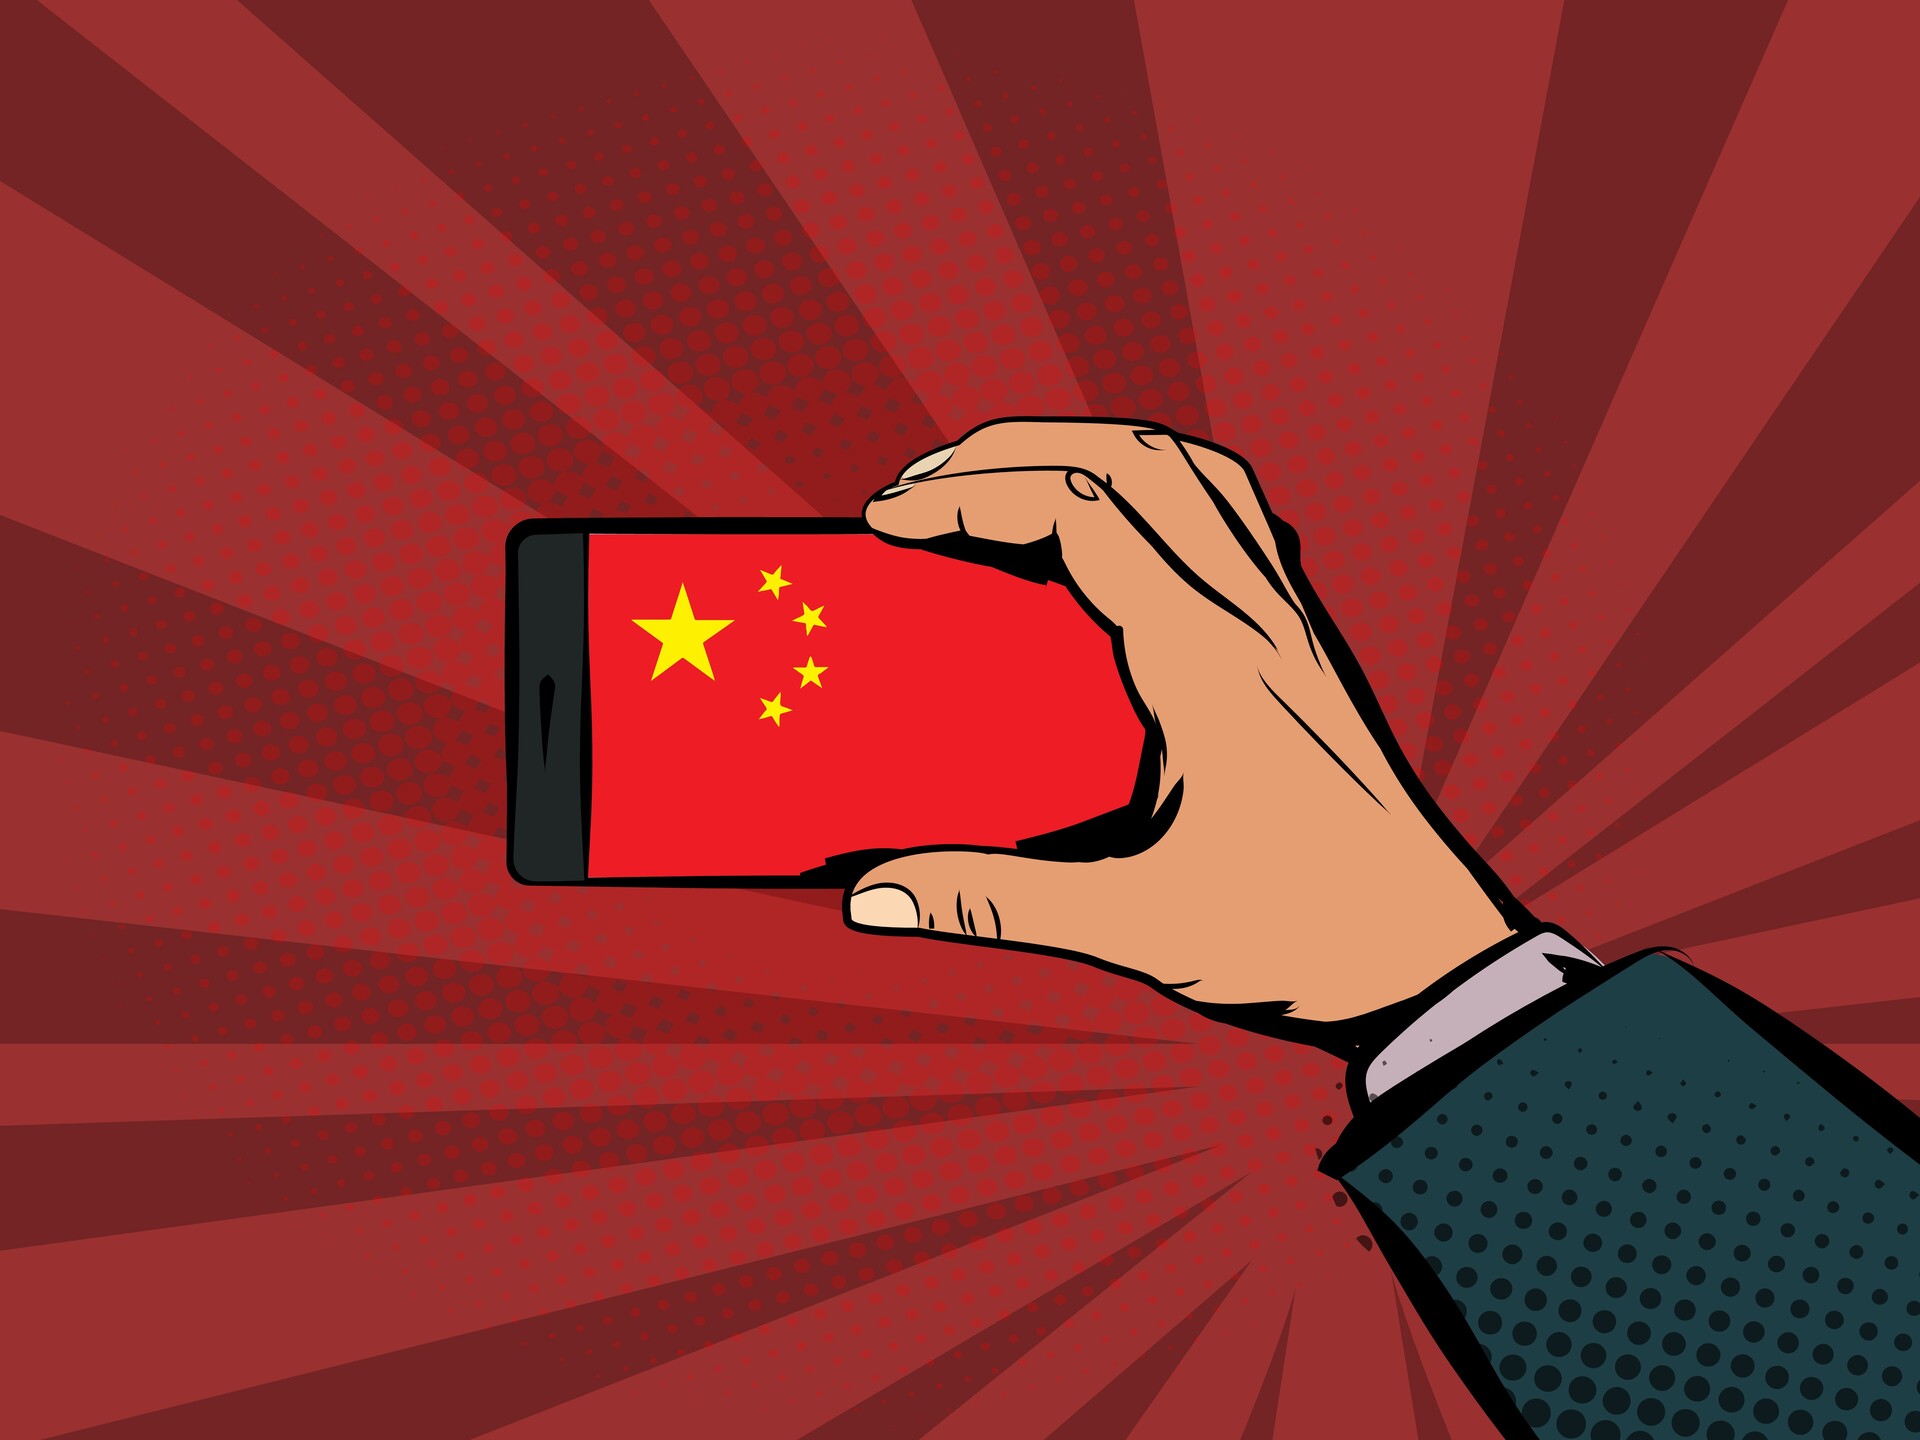 En Chine, des usines font tourner des racks de smartphones en simultané pour commettre des escroqueries à grande échelle